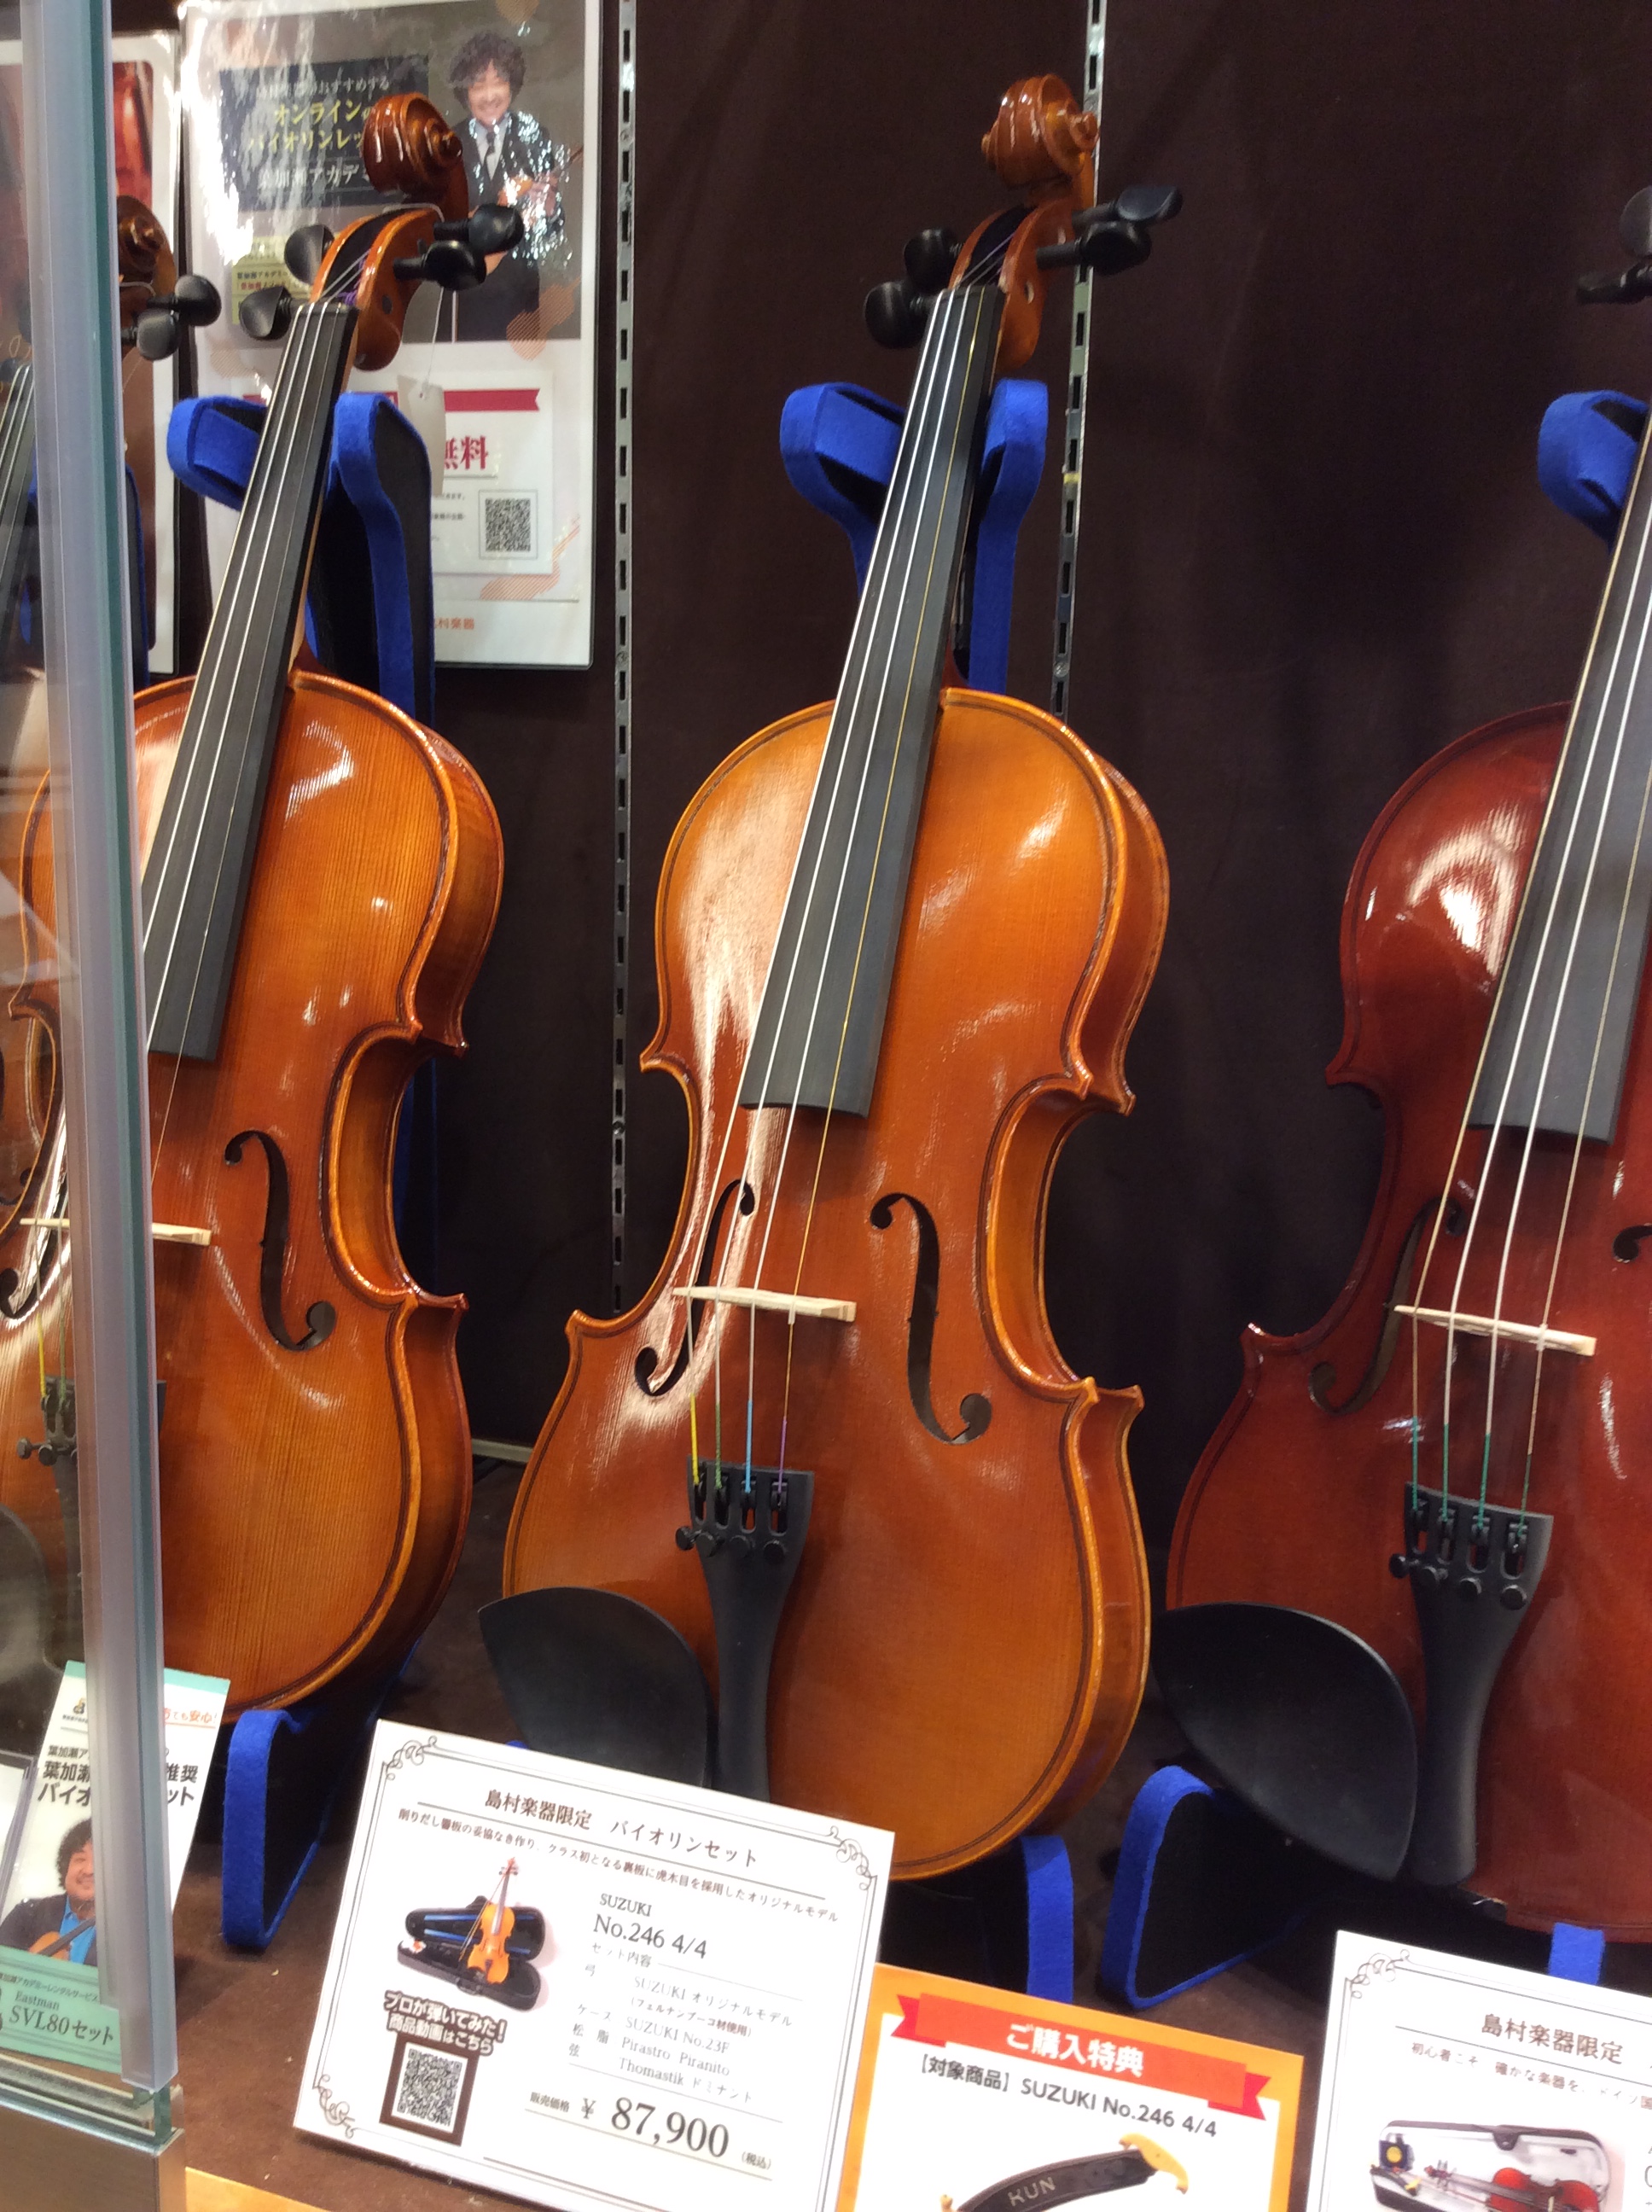 バイオリン】島村楽器×SUZUKI コラボレーションモデル バイオリン 